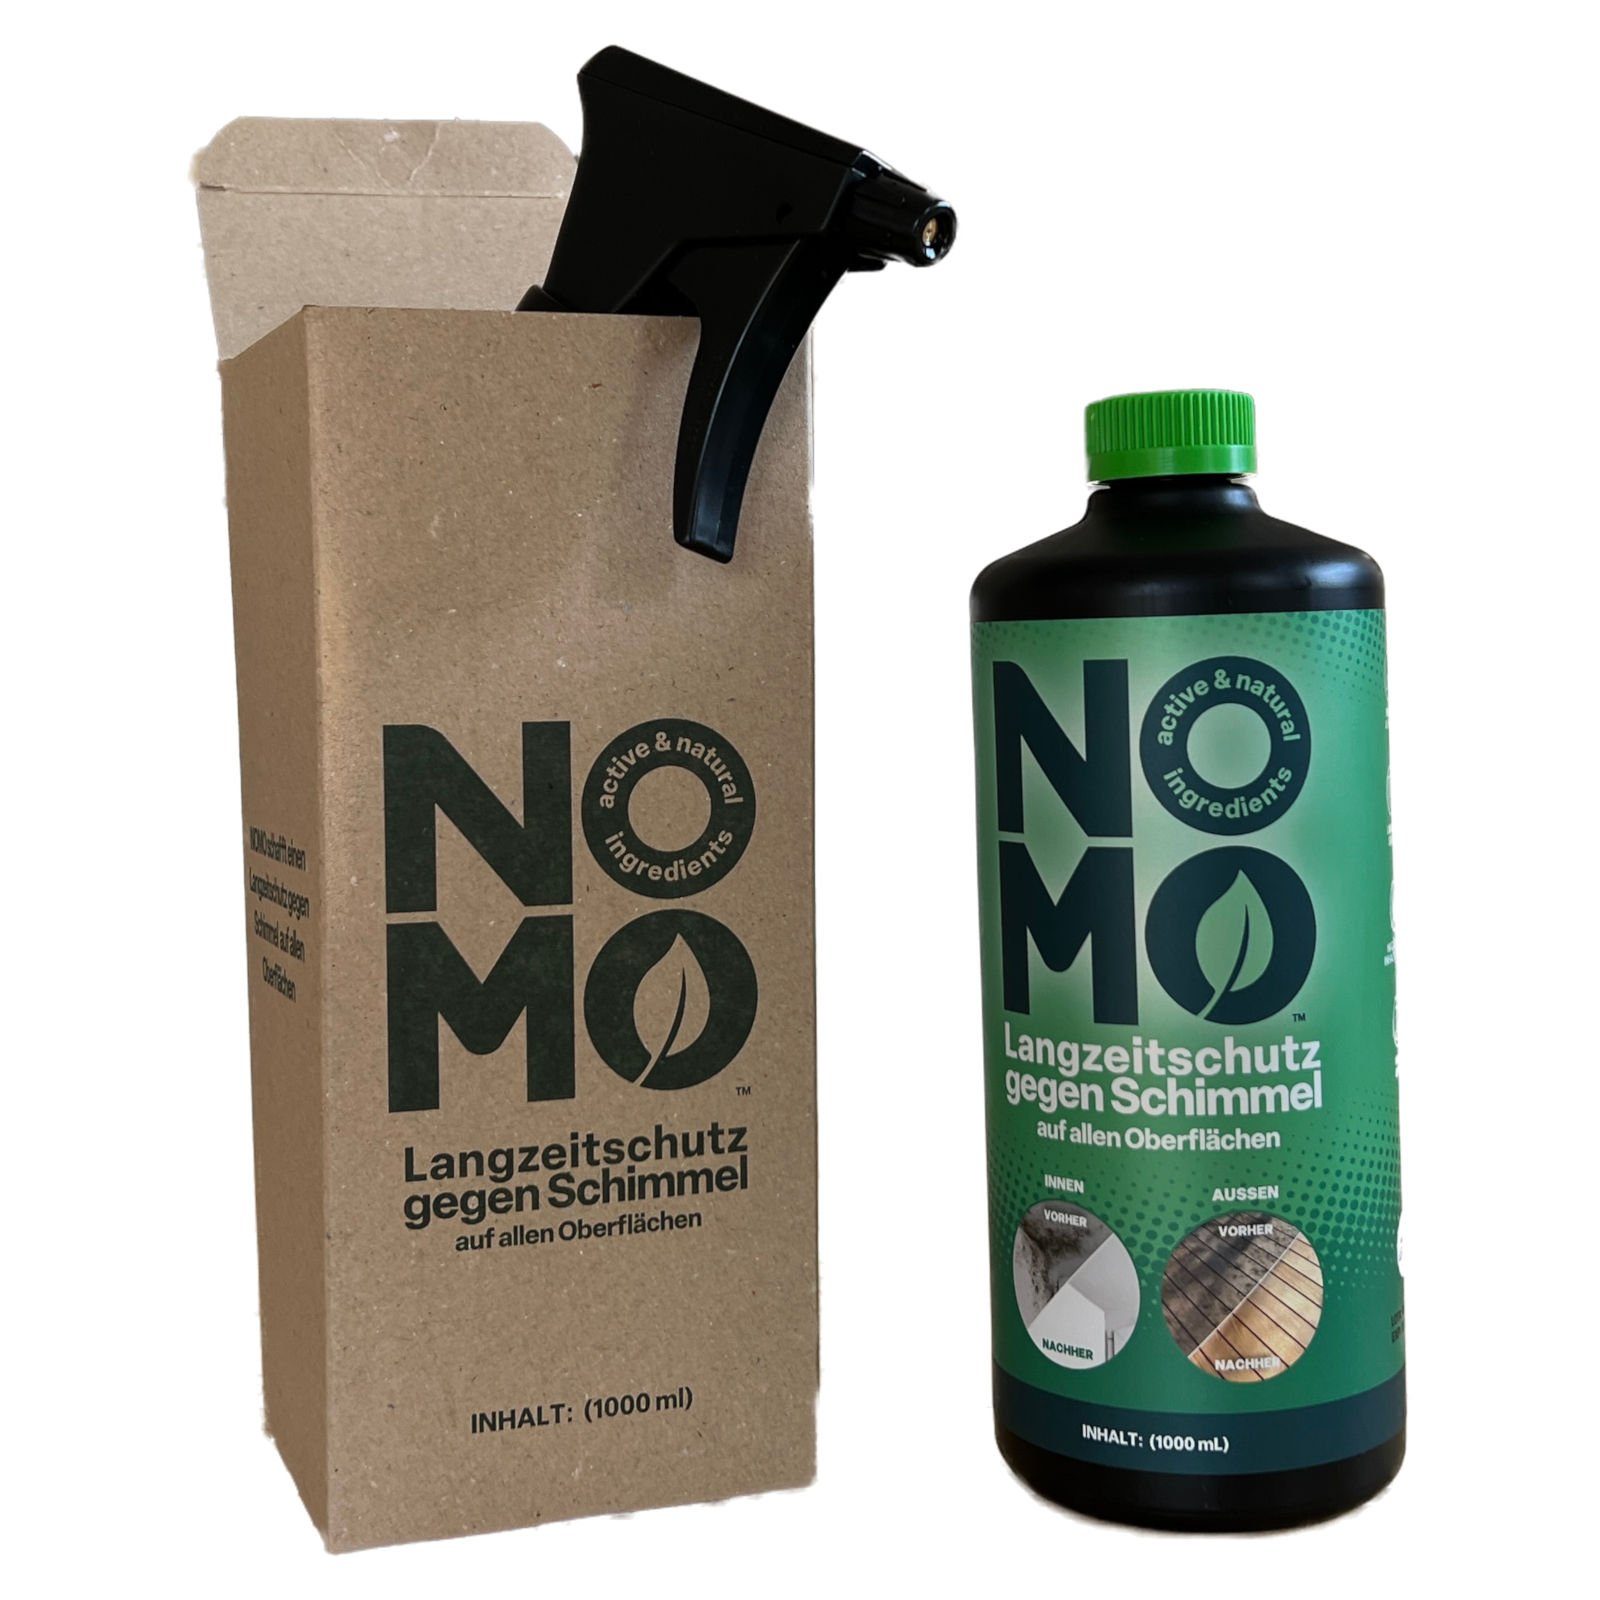 NOMO Natürlicher Langzeitschutz gegen Schimmel – 1 Liter Schimmelentferner